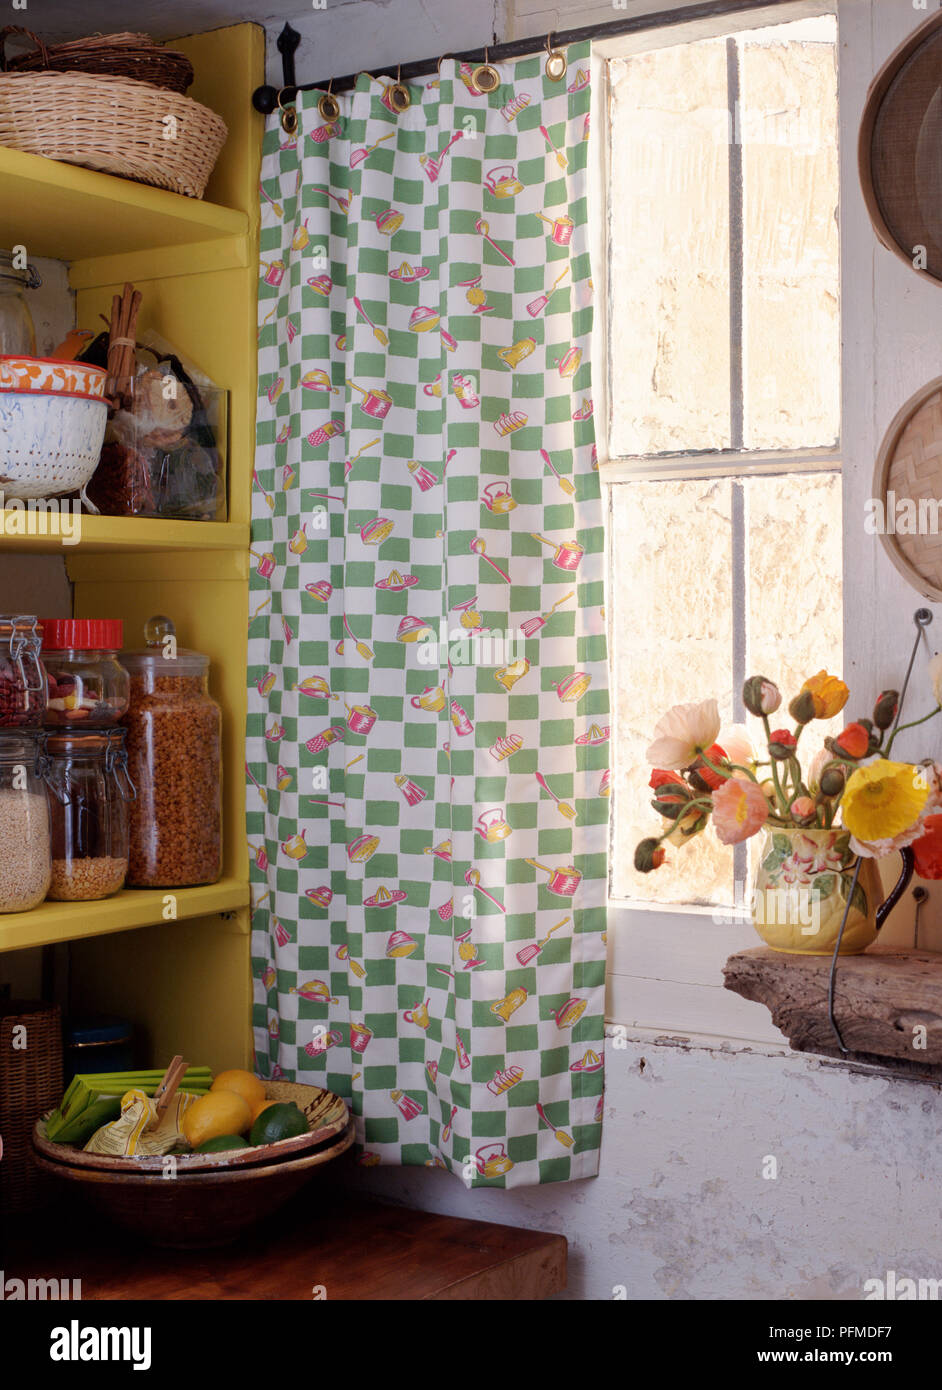 Cottage"-Fenster von innen; öse Vorhang mit grünen Häkchen und Küchengeräte Hängen der Eisenbahn über Fenster, Vase mit Blumen stehen auf grober Holztisch, gelb Regale neben. Stockfoto